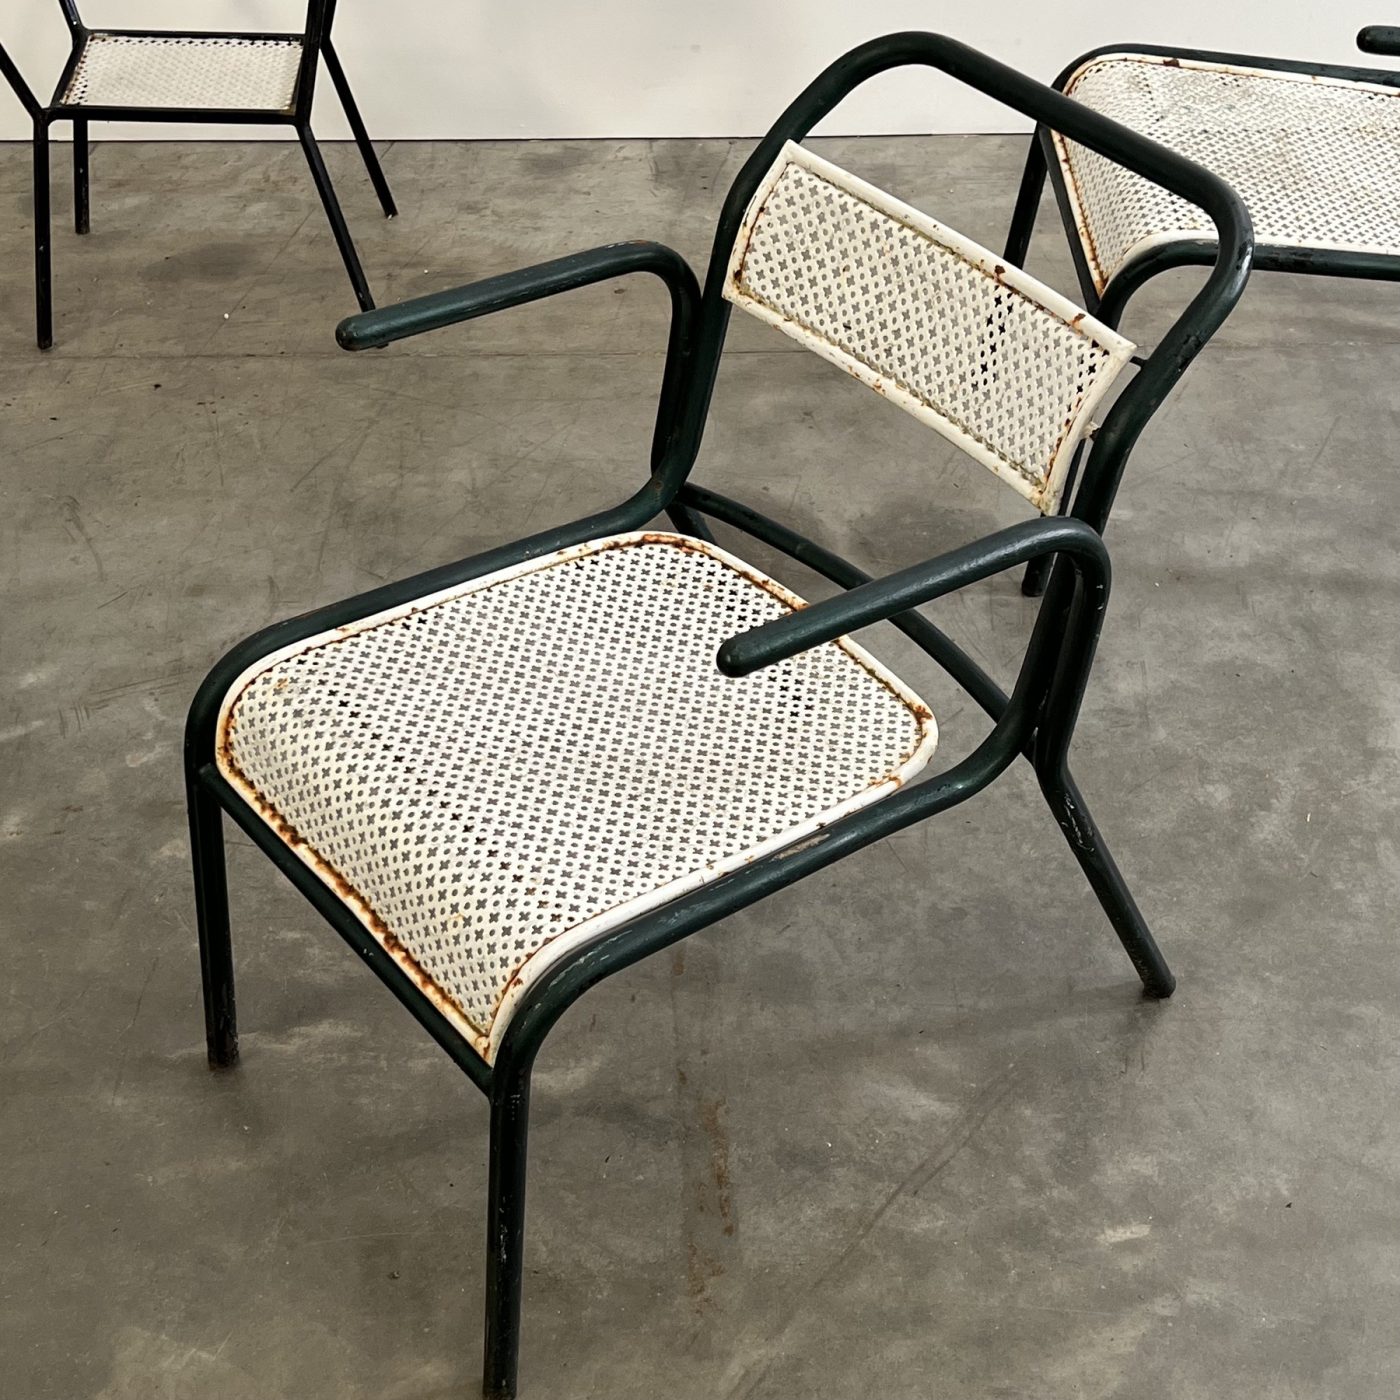 objet-vagabond-garden-chairs0006